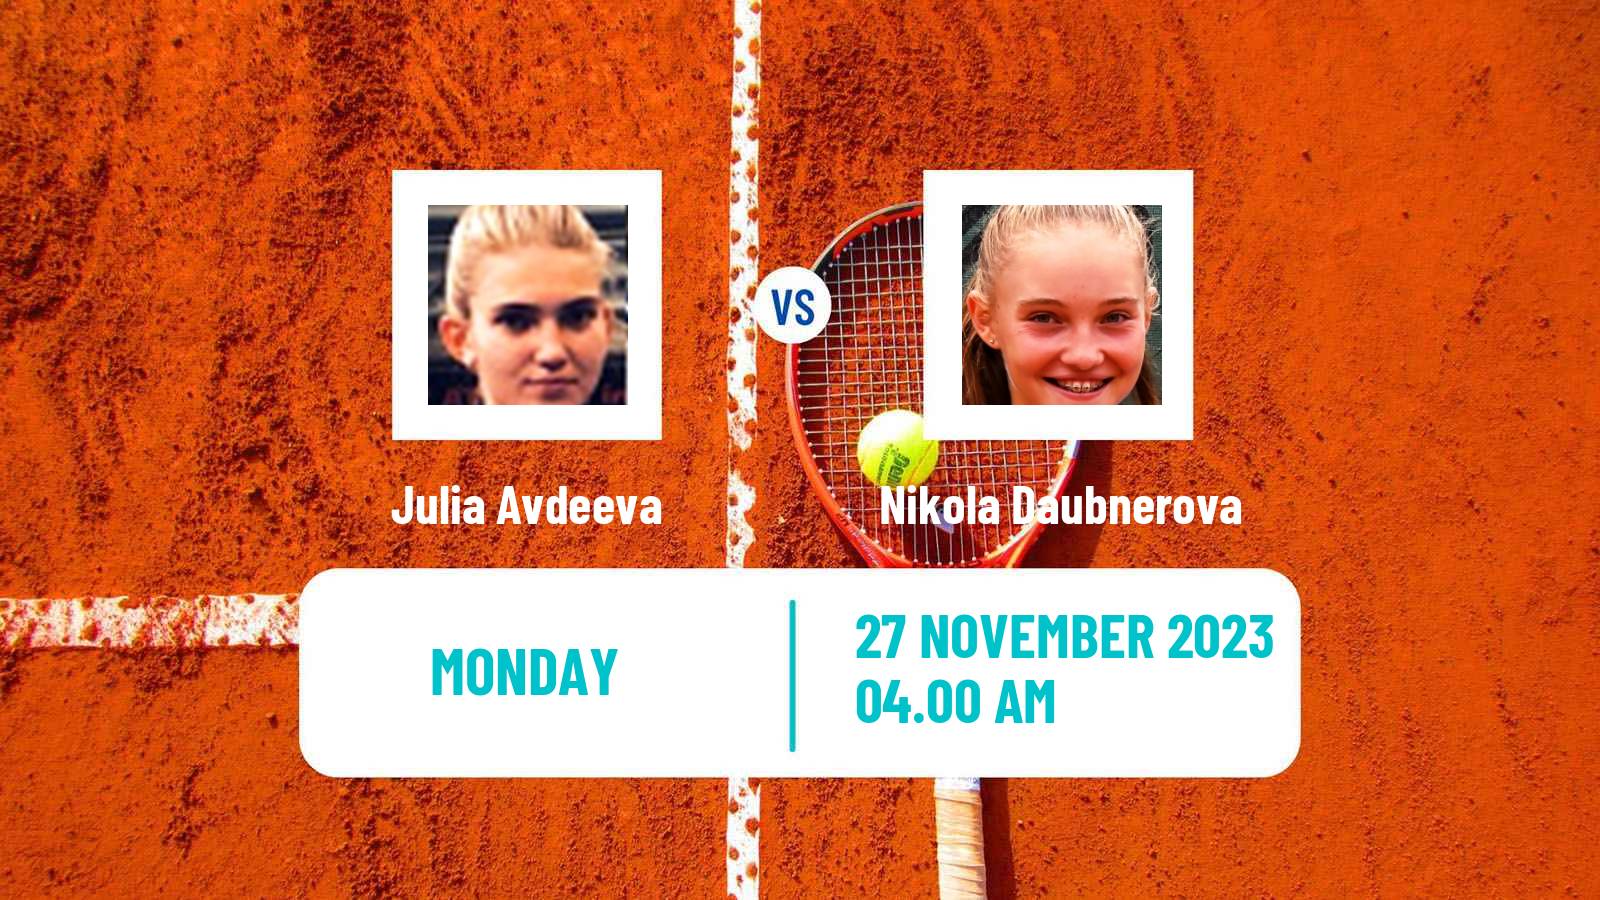 Tennis ITF W25 Selva Gardena Women Julia Avdeeva - Nikola Daubnerova